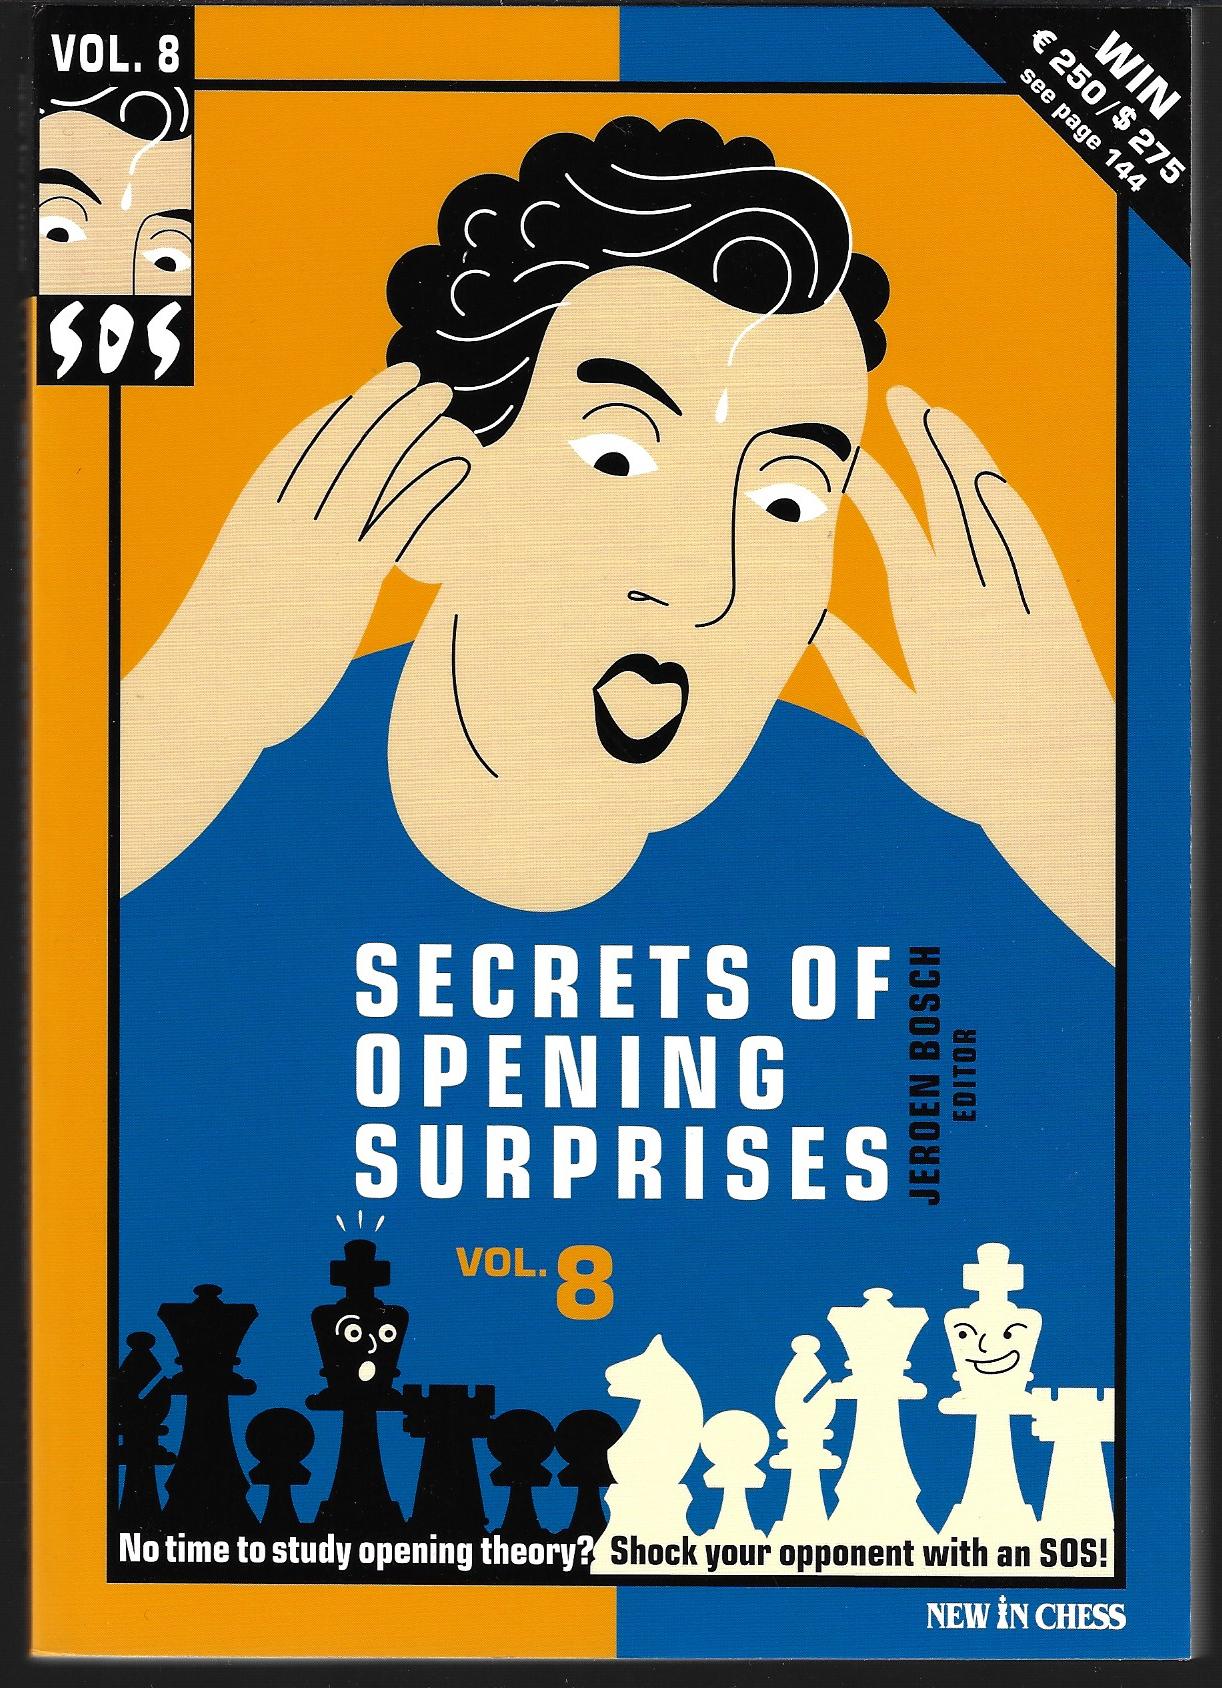 Many - Secrets of opening surprises Vol. 8 -SOS vol. 8